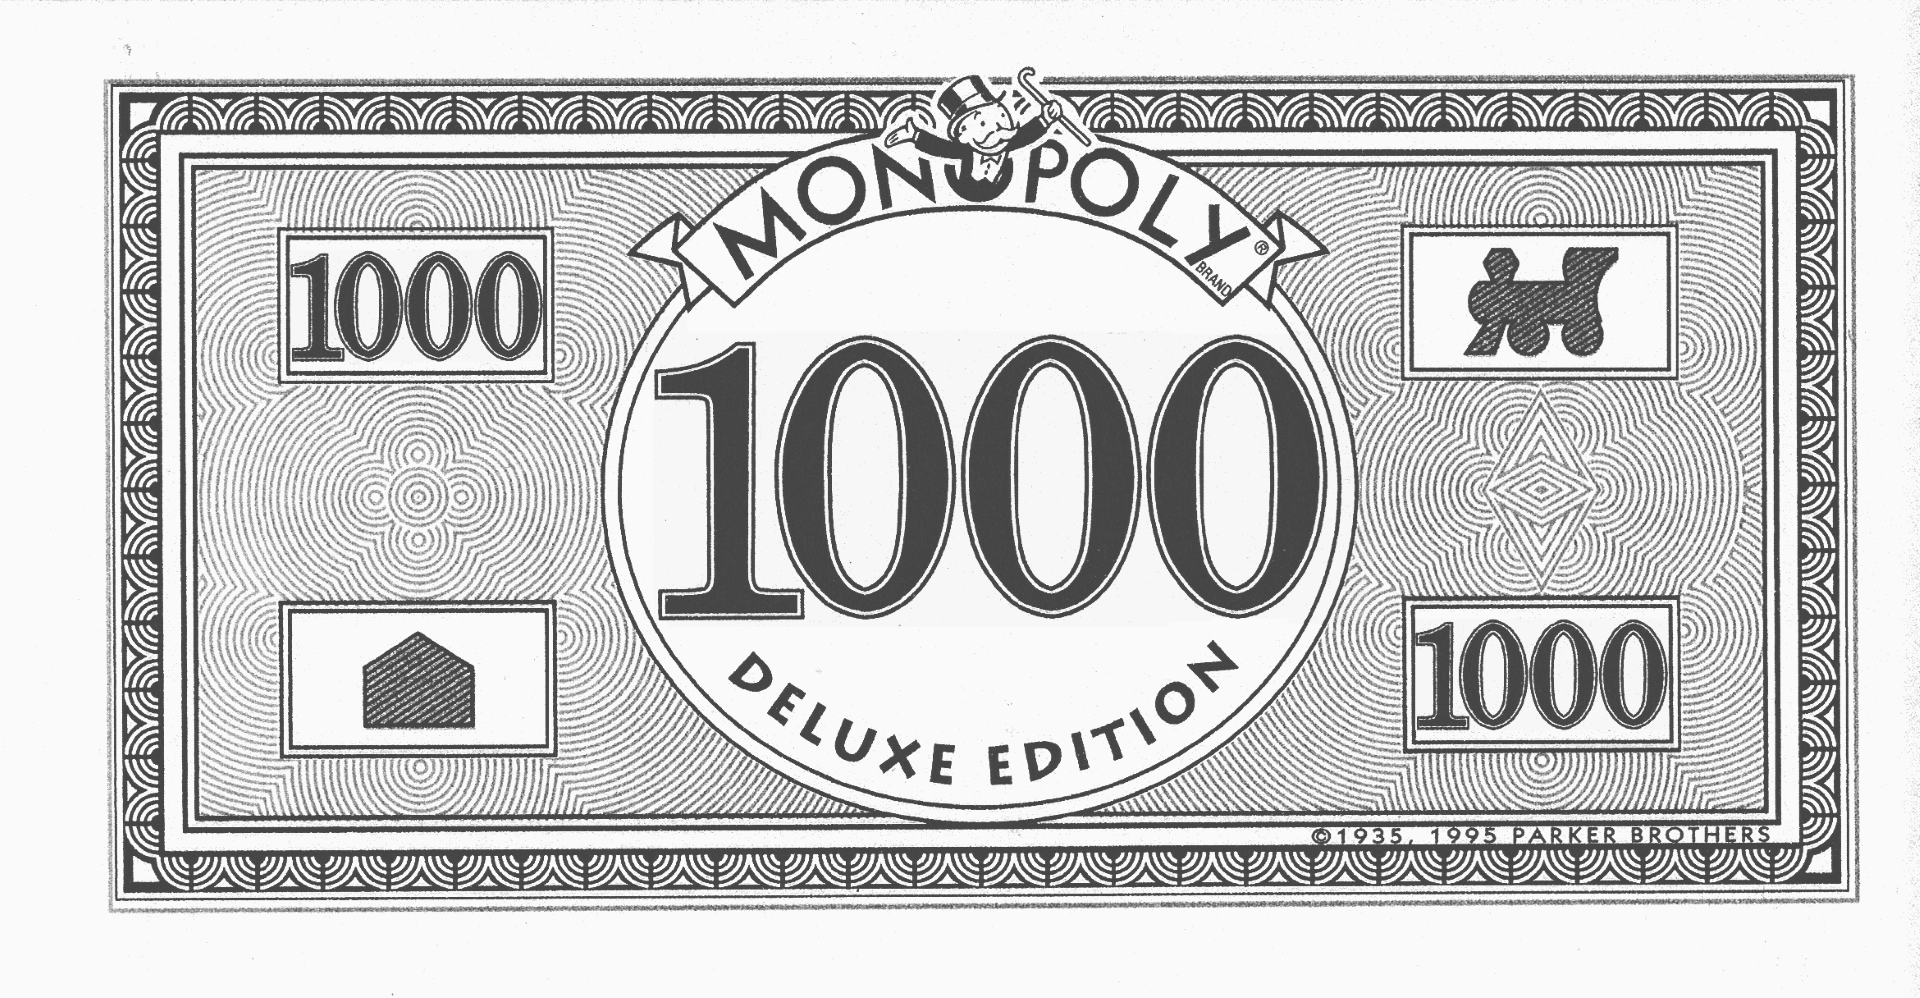 500 monopoly money